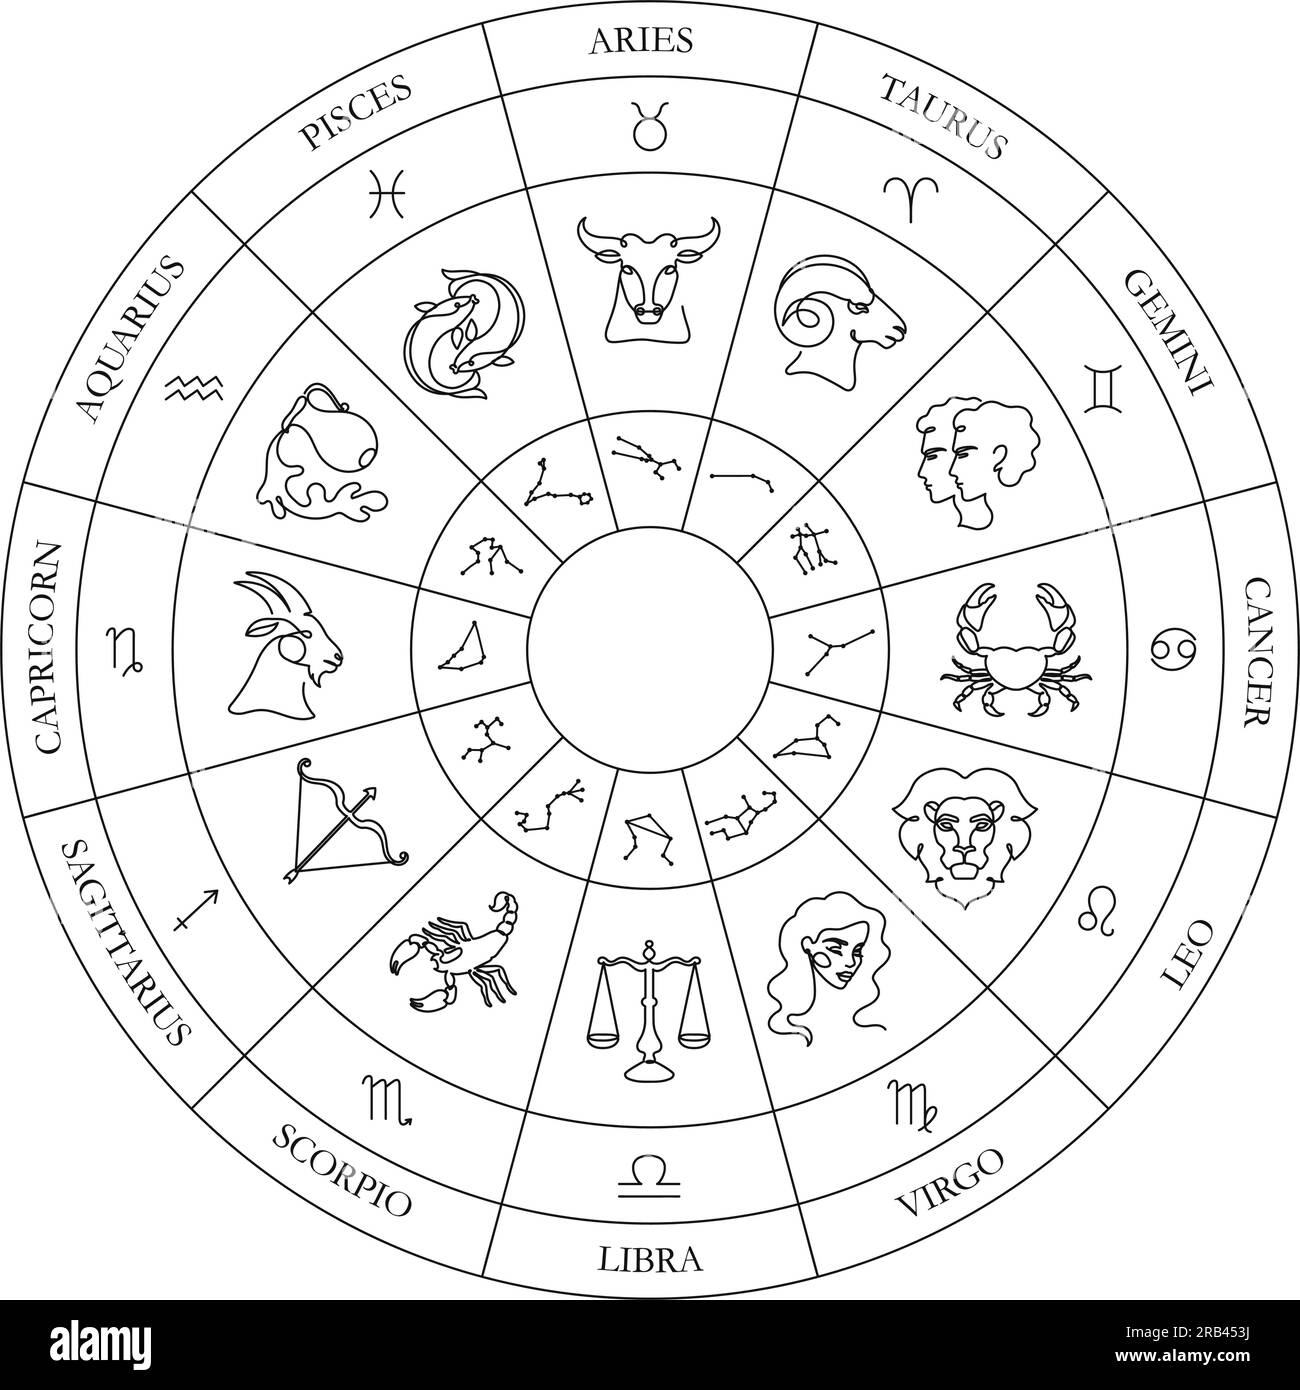 Zodiakreis. Astrologie-Rad mit durchgehenden einzeiligen Zodiakzeichen, Sternbilder und Illustrationen Vektorgrafiken Stock Vektor